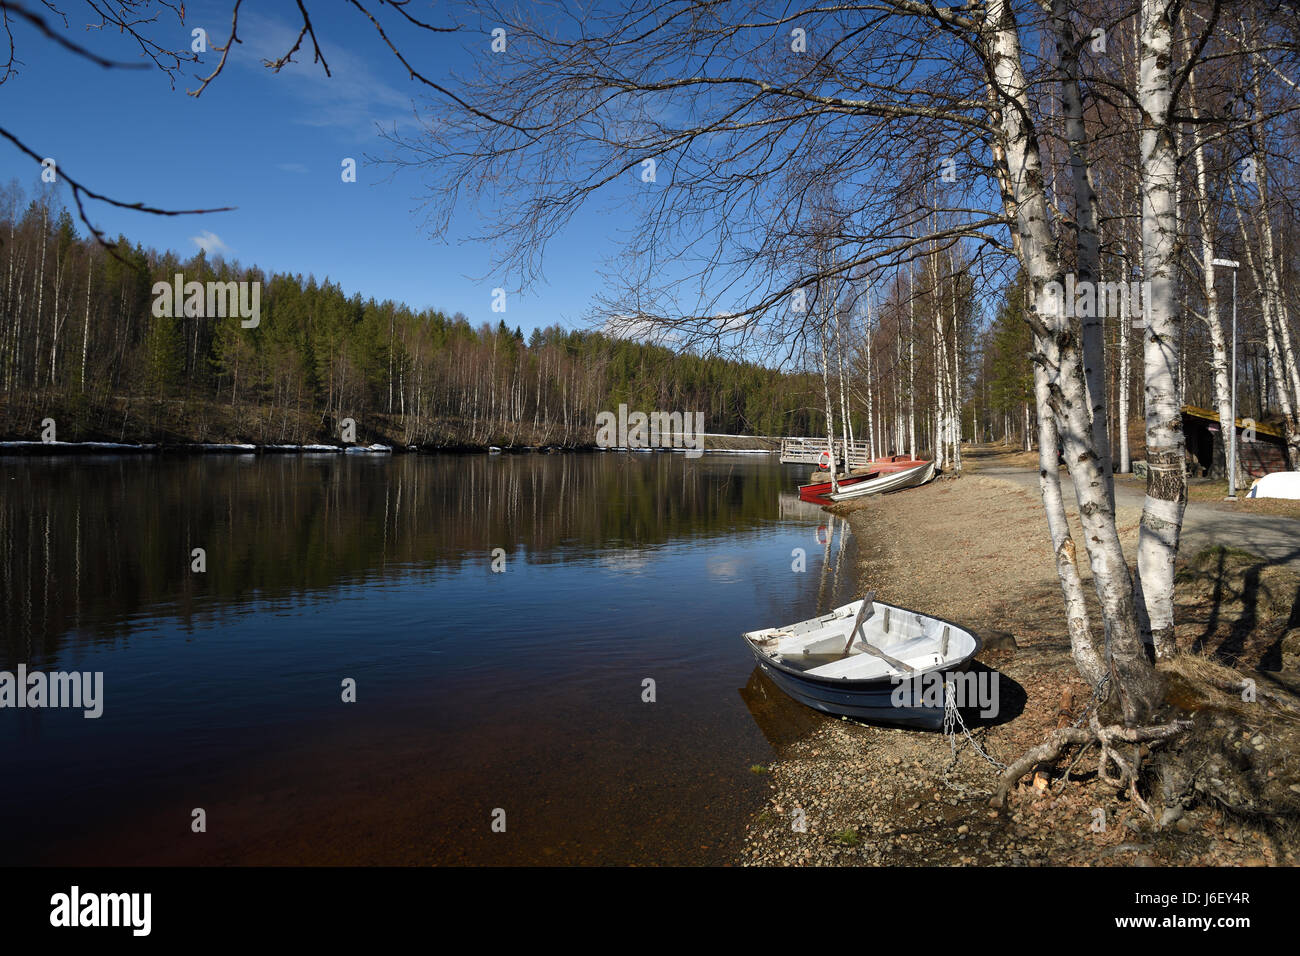 Giornata di Primavera con il blu del cielo e acqua calma su "Ume' fiume con alcune barche sulla riva e betulle in primo piano immagine dal nord della Svezia. Foto Stock